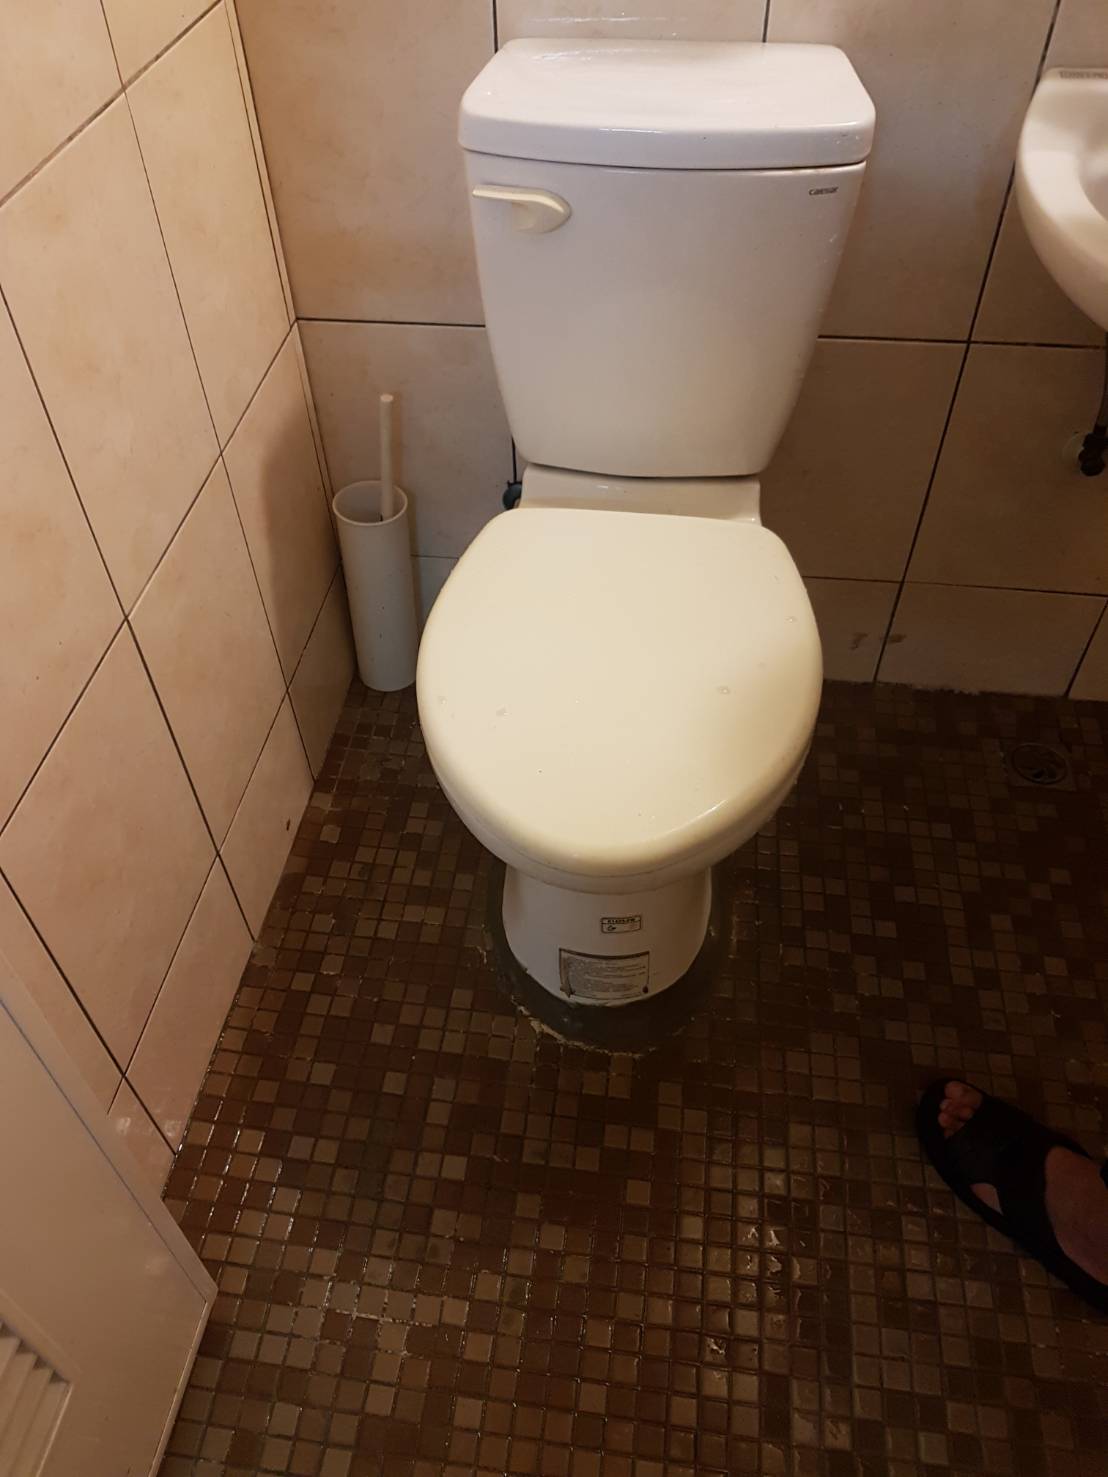 某住家的廁所堵塞